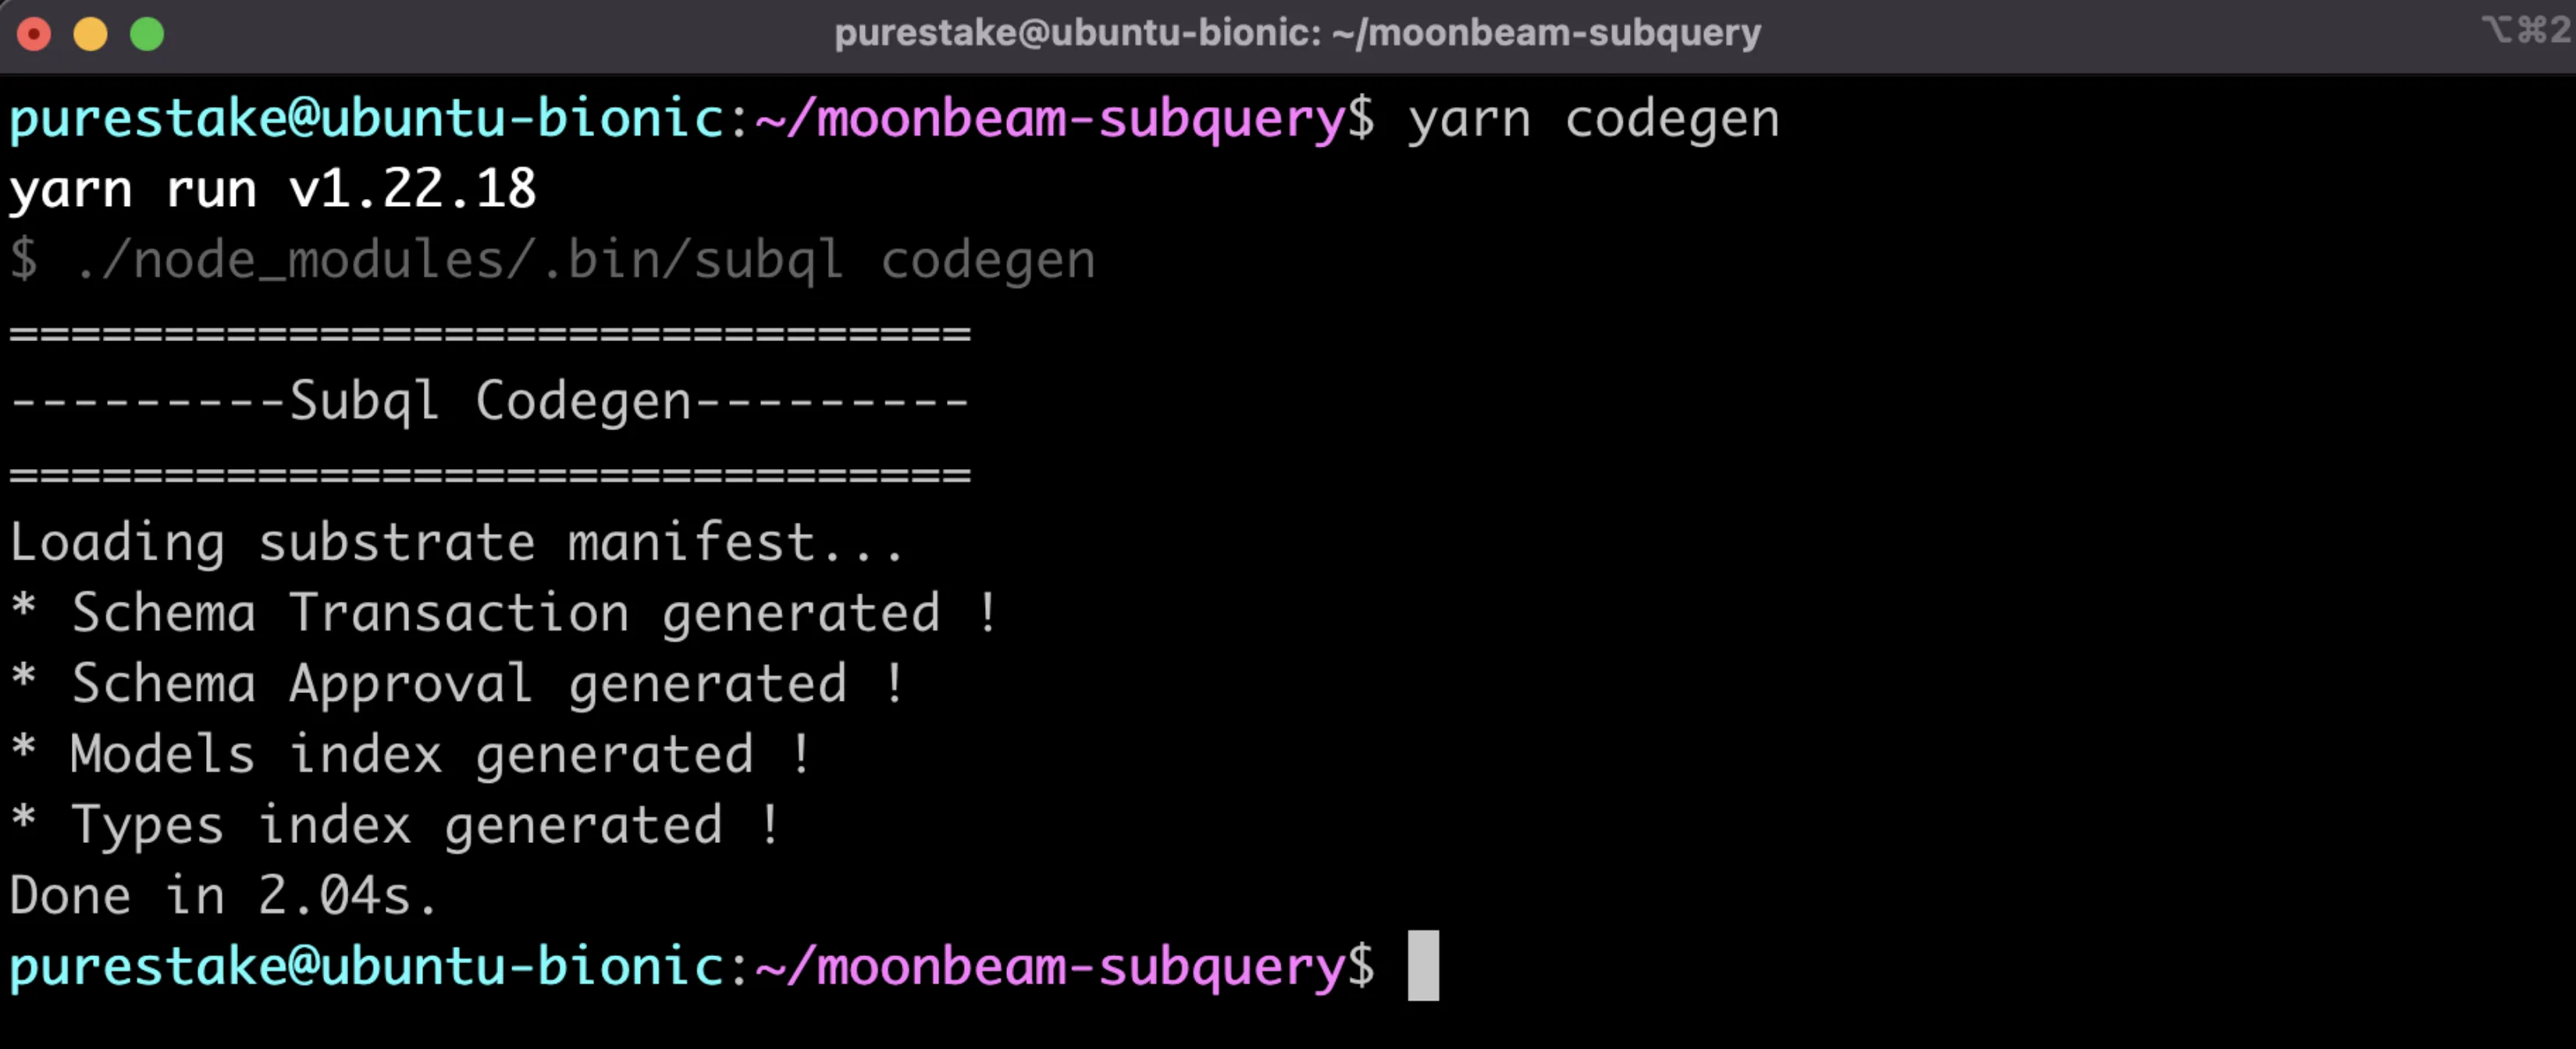 yarn codegen results